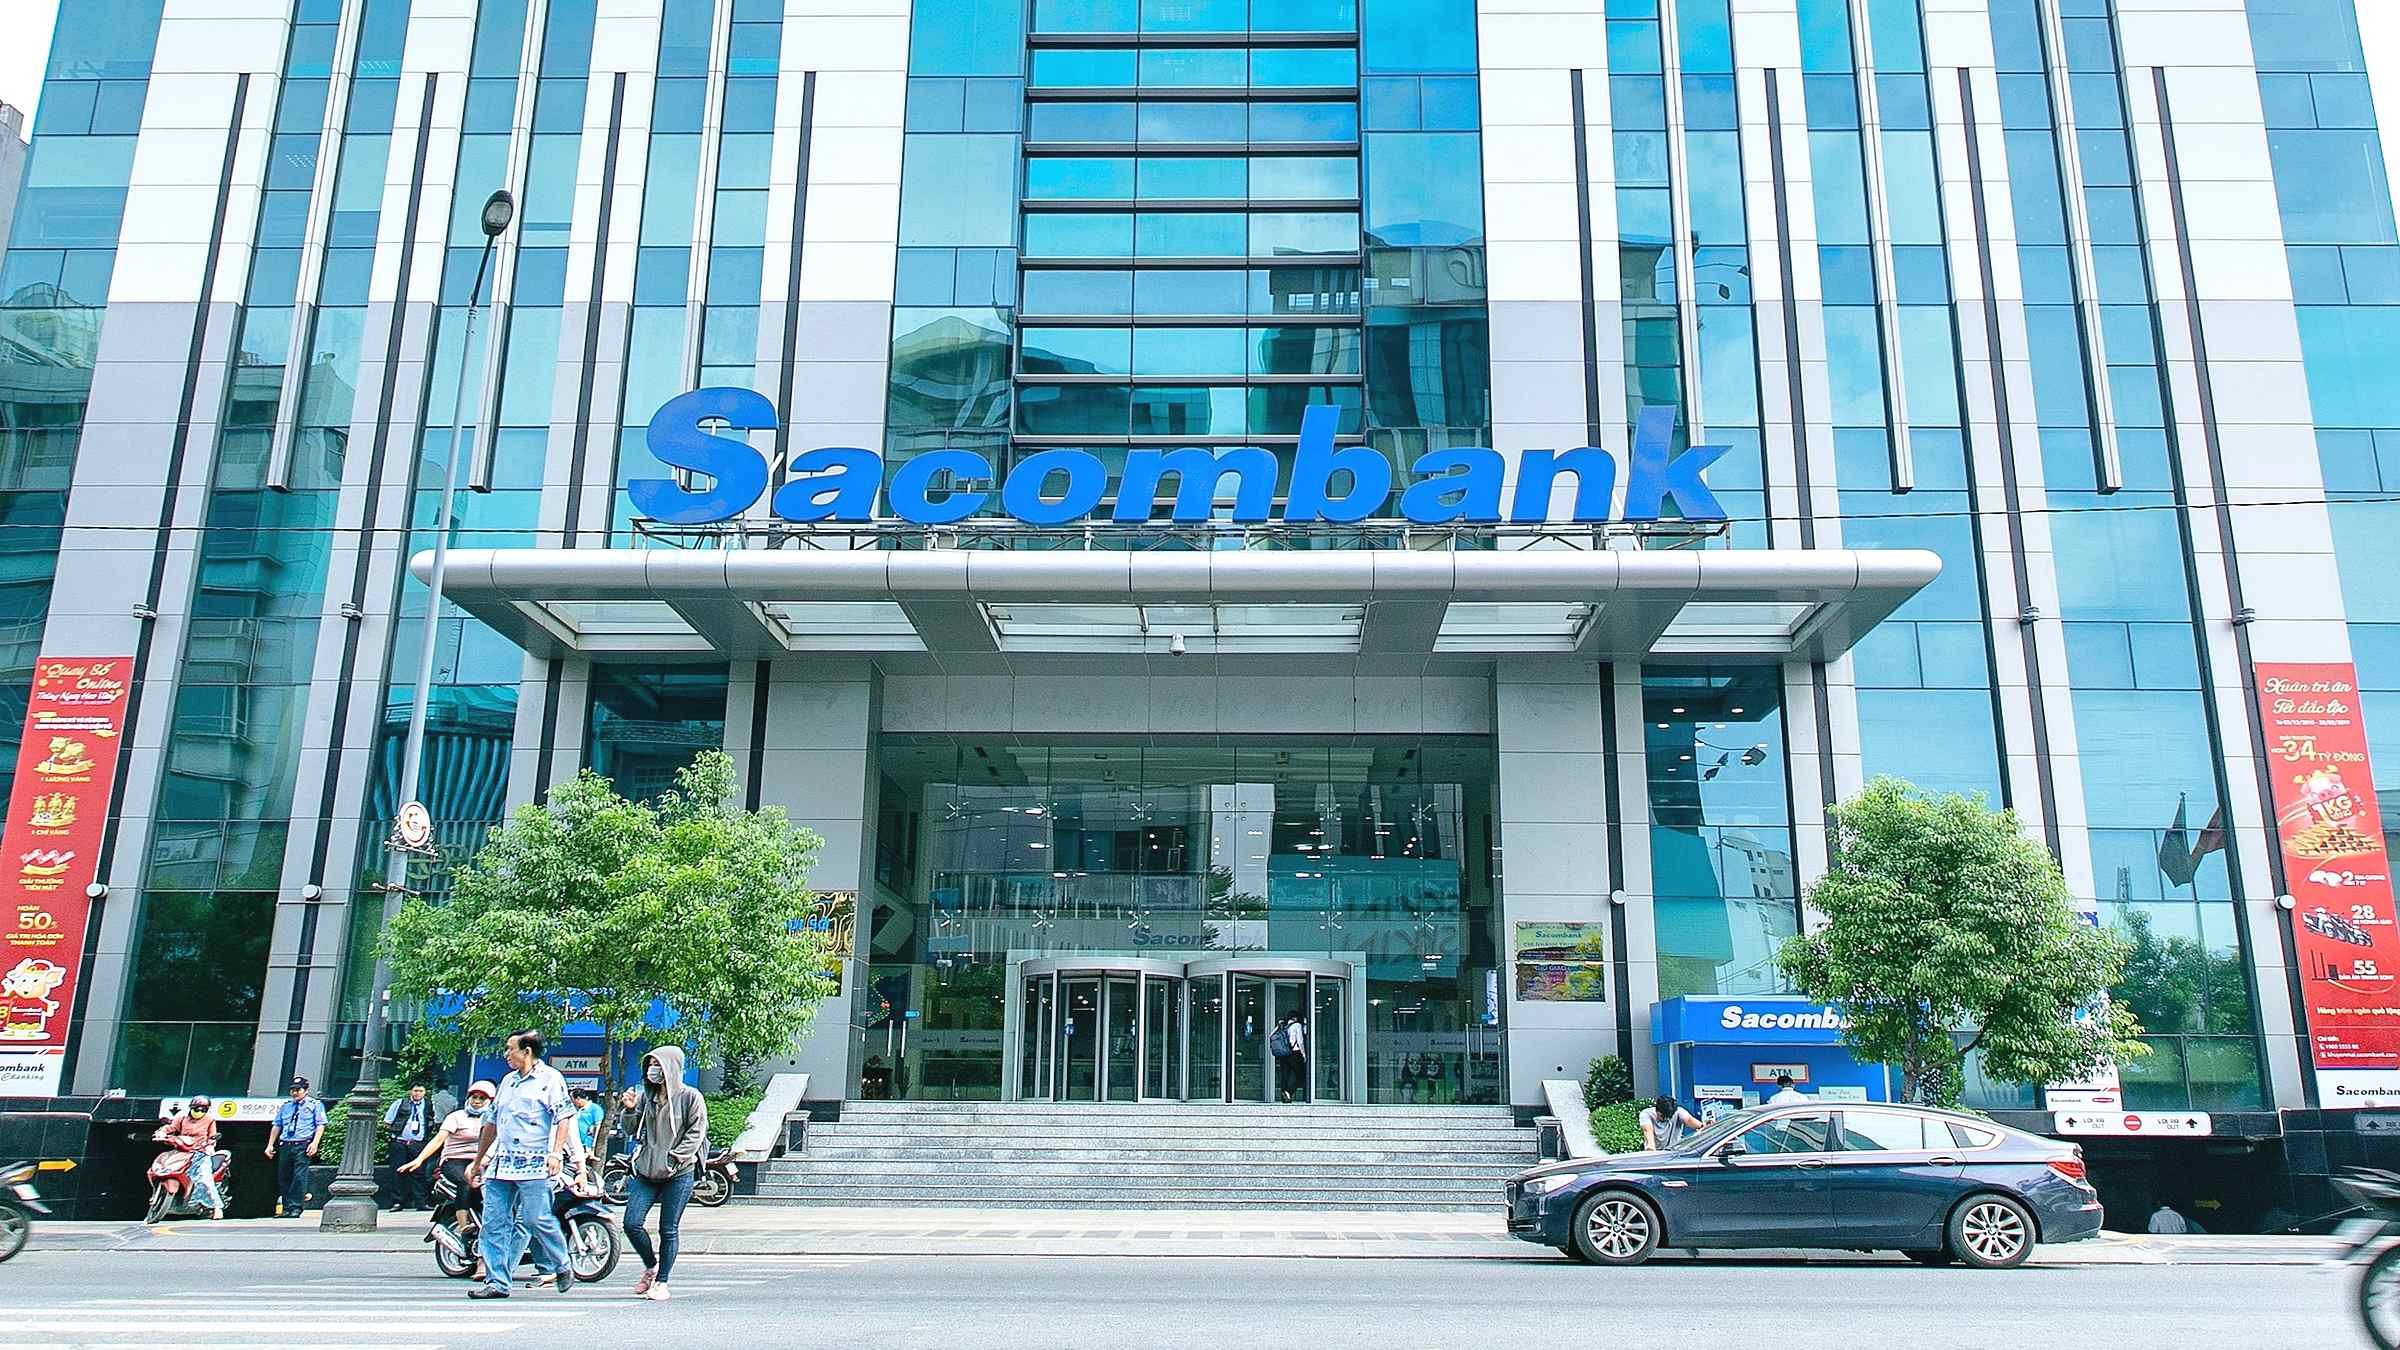 Ngân hàng Sacombank